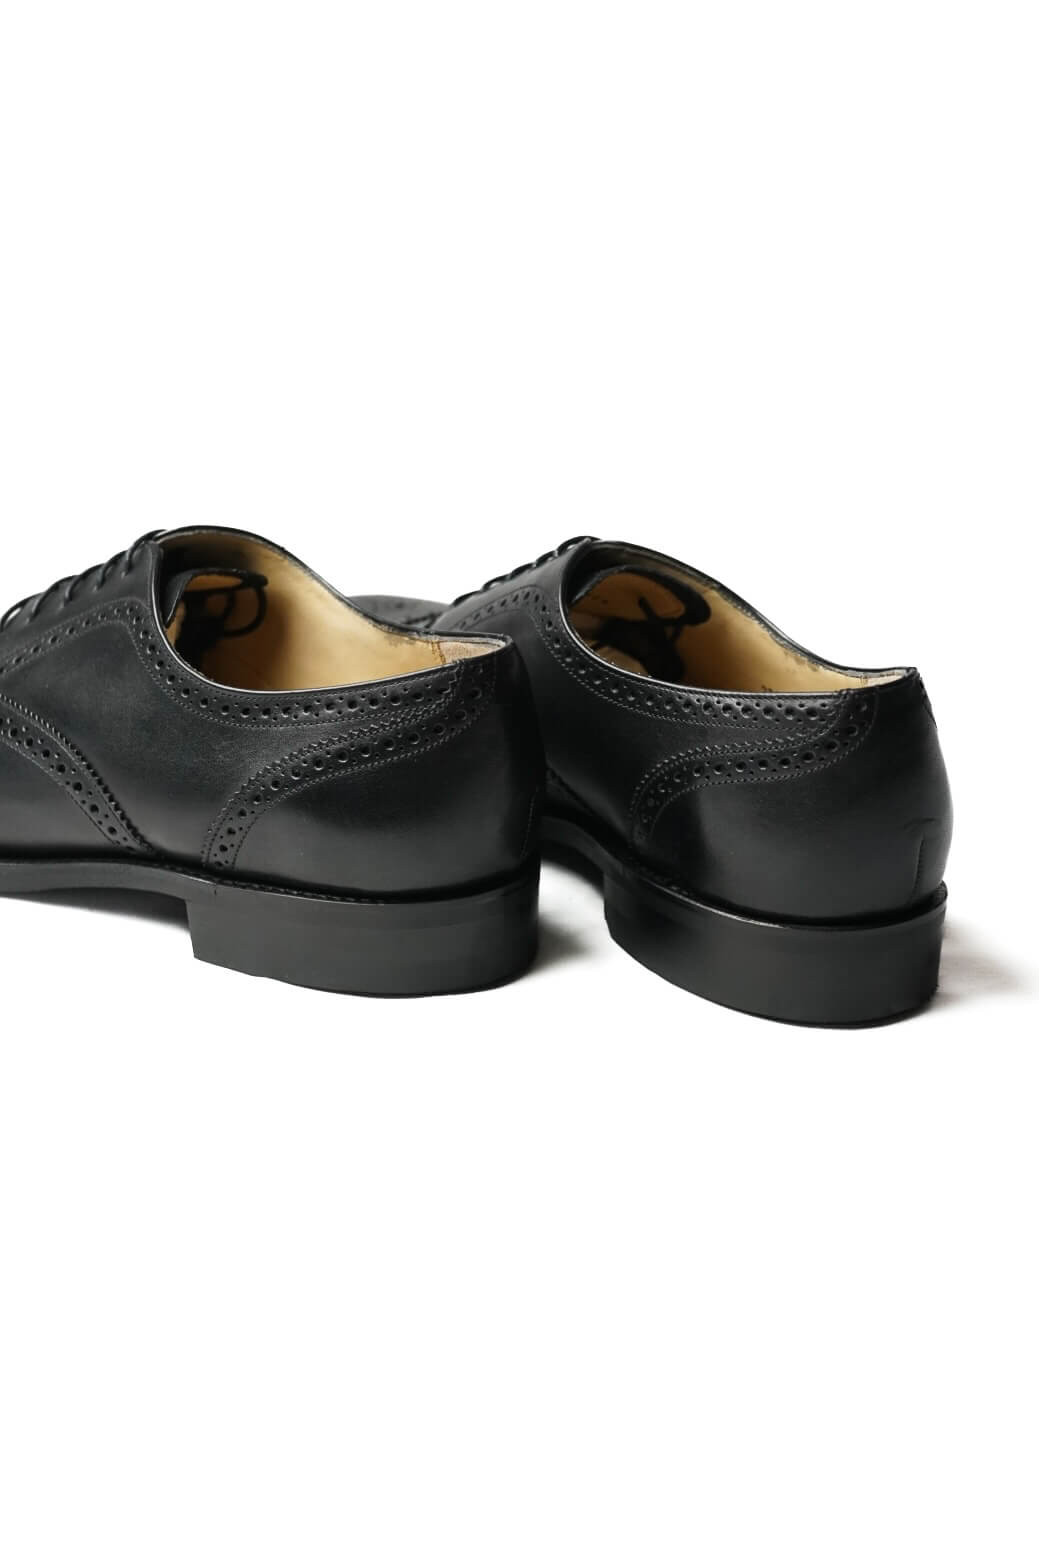 Lloyd Footwear / Semi Brogue OxFord